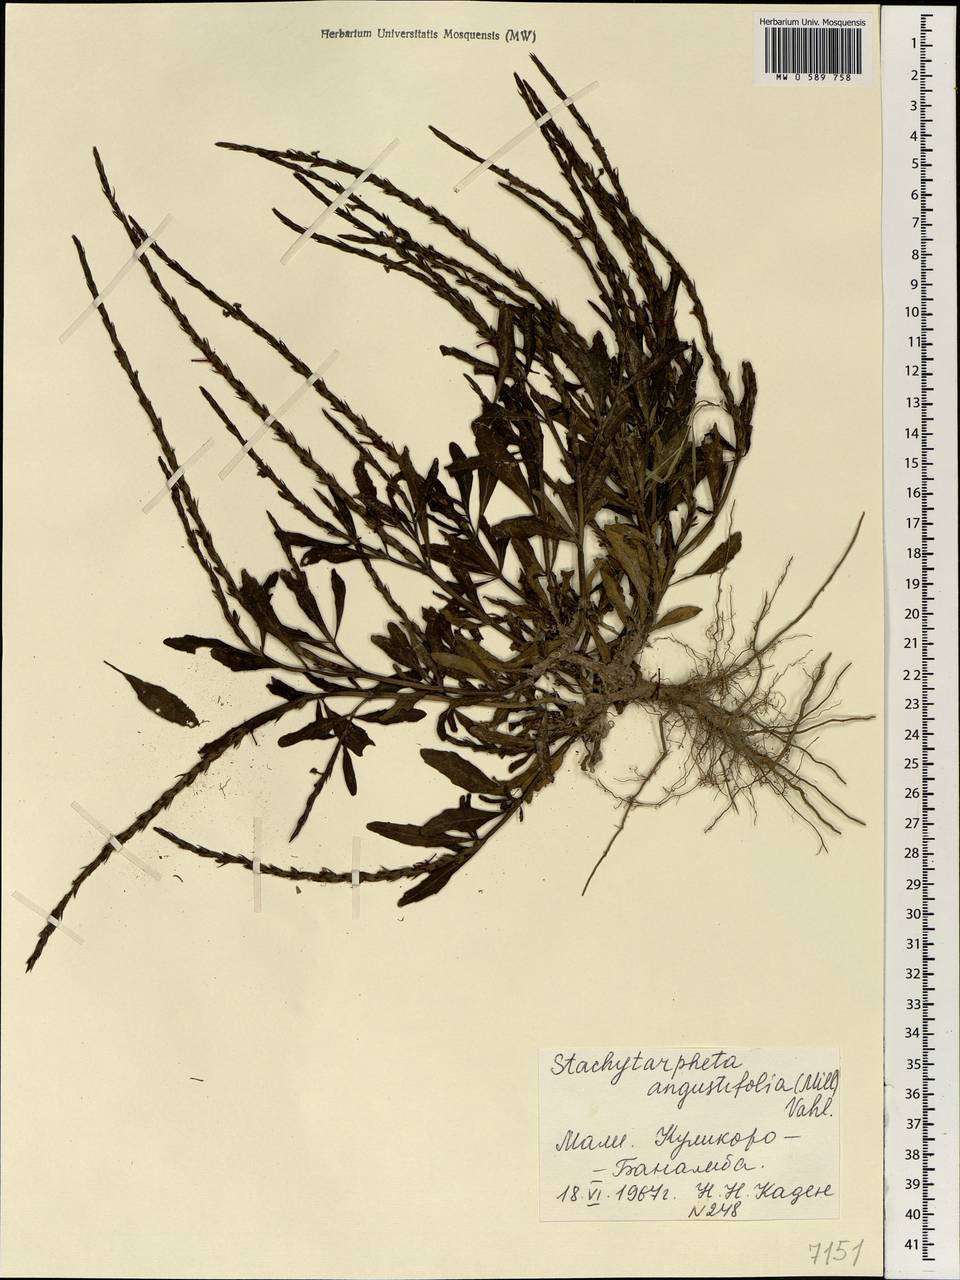 Stachytarpheta indica (L.) Vahl, Africa (AFR) (Mali)